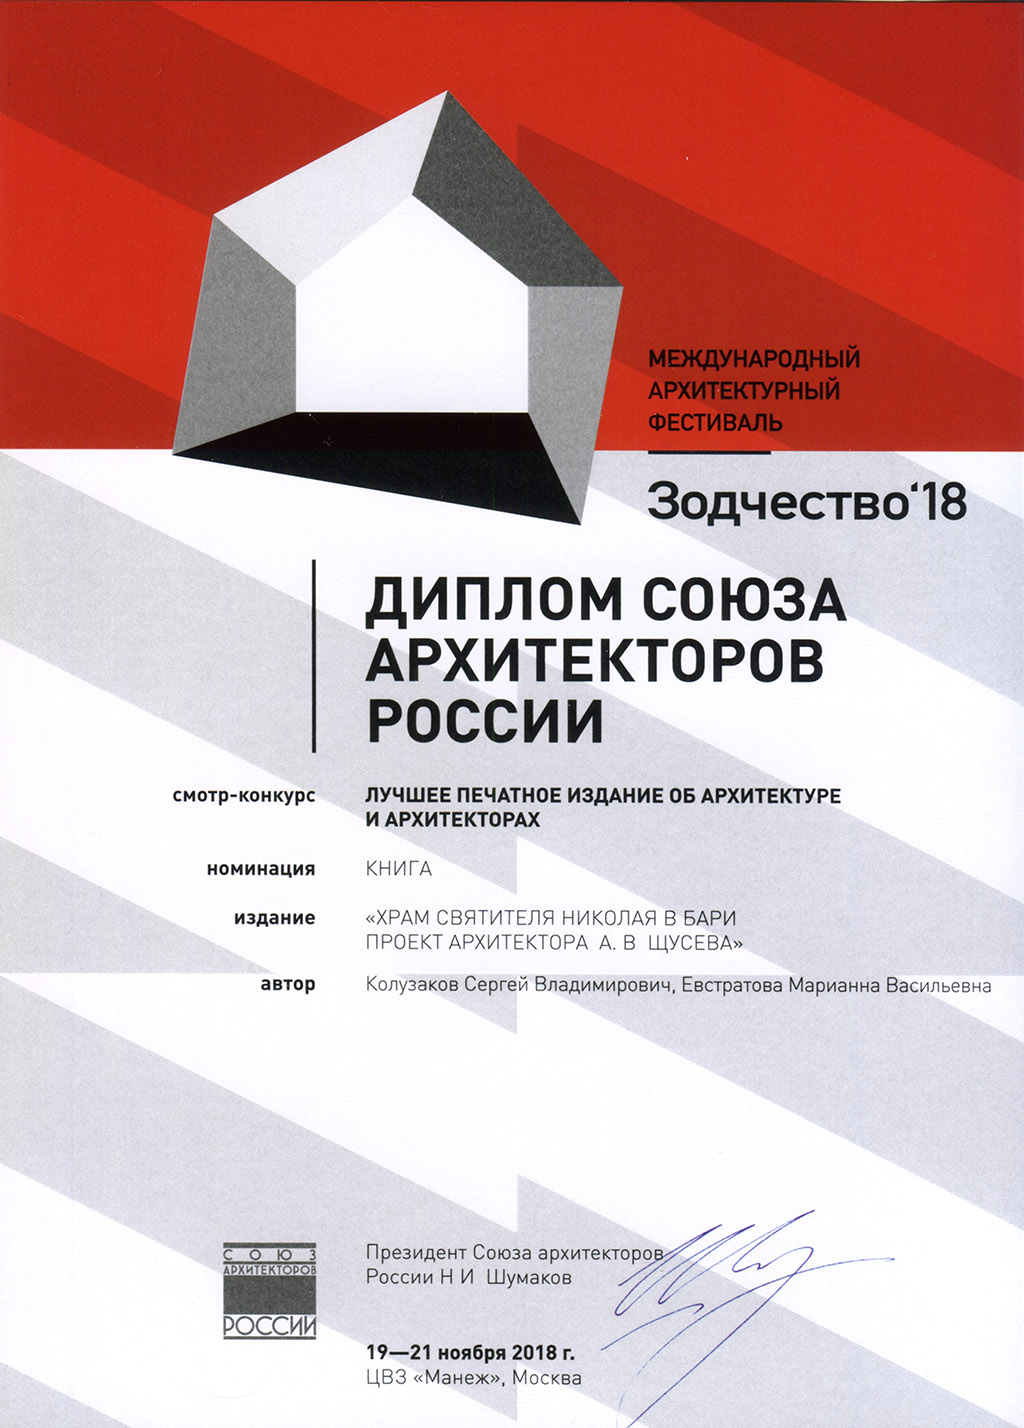 «Лучшее издание об архитектуре и архитекторах» на конкурсе Международного архитектурного фестиваля «Зодчество»